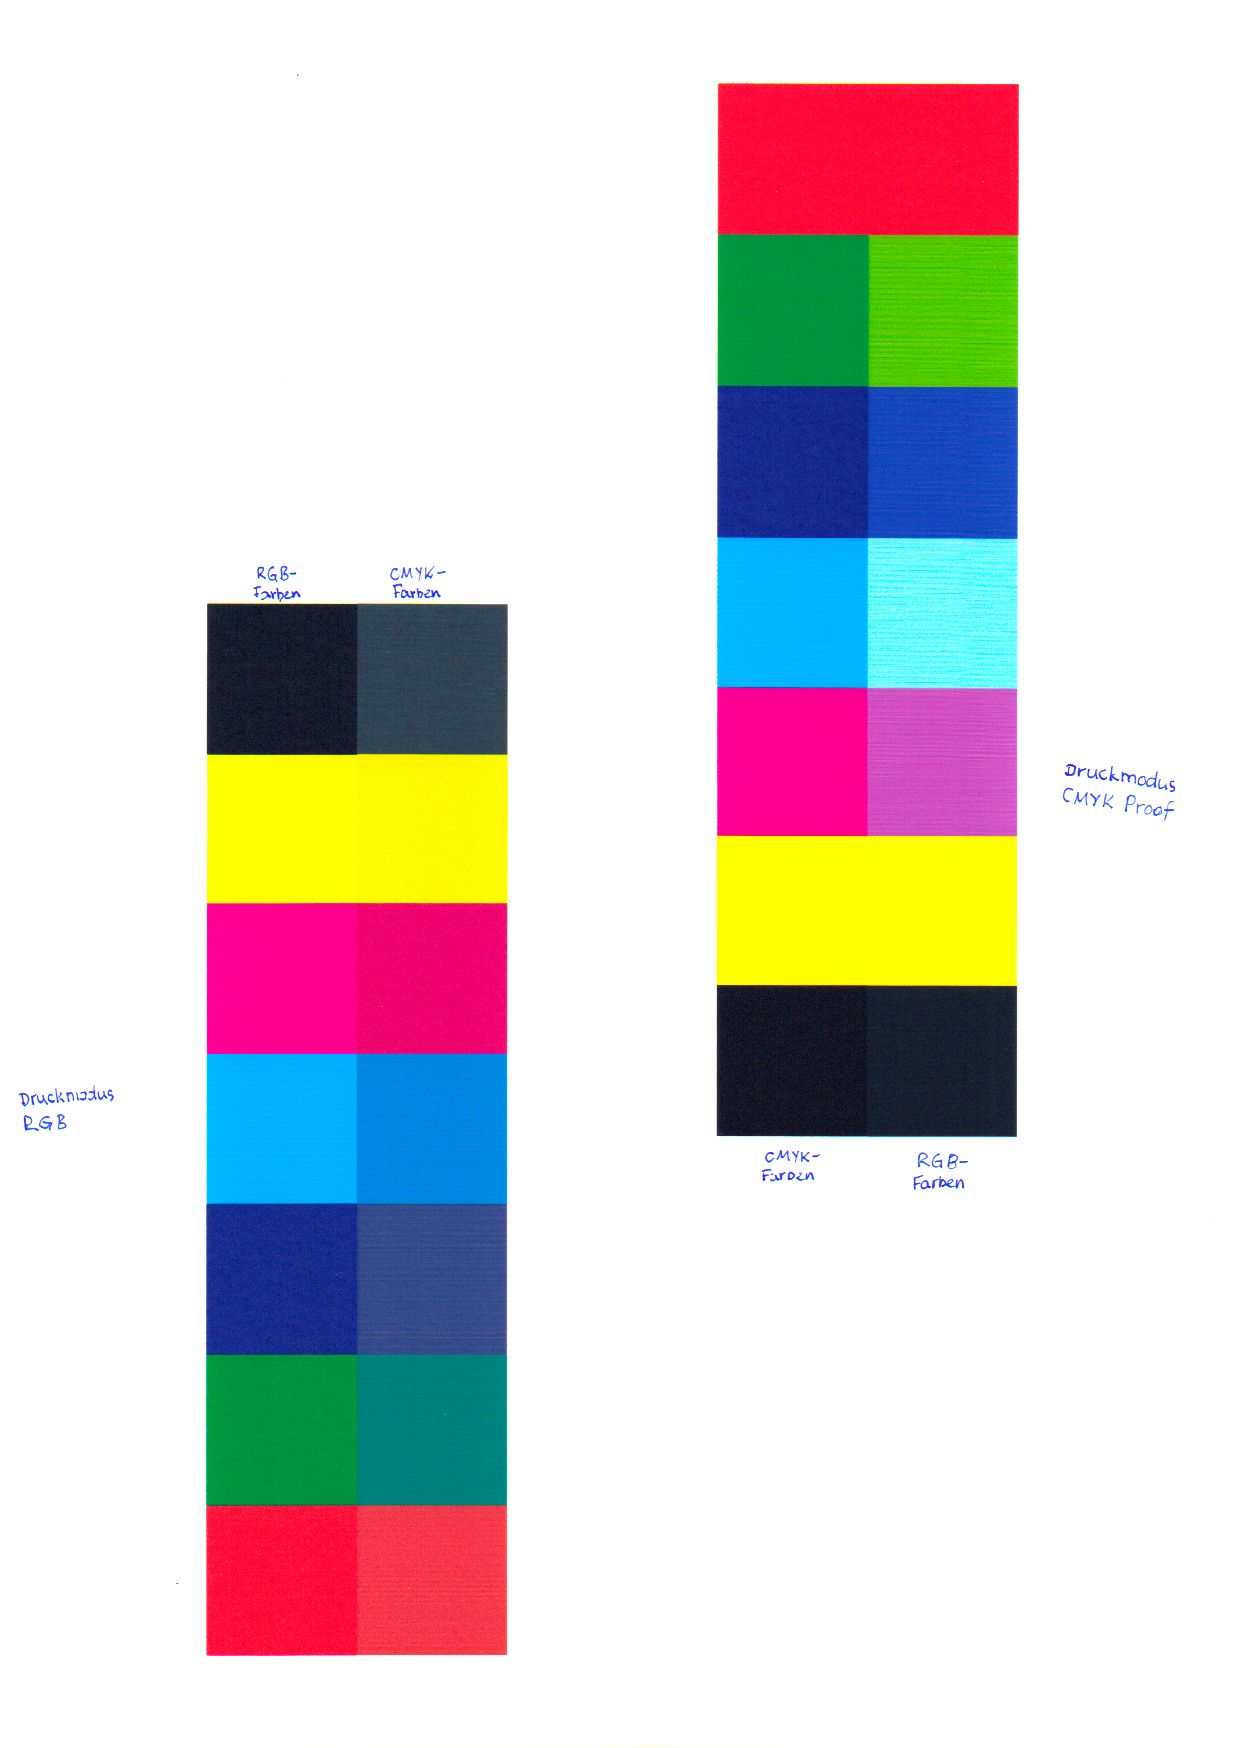 CMYK-Farben und RGB-Farben beim Druck im CMYK-Modus und im RGB-Modus (ohne Farbkorrektur)